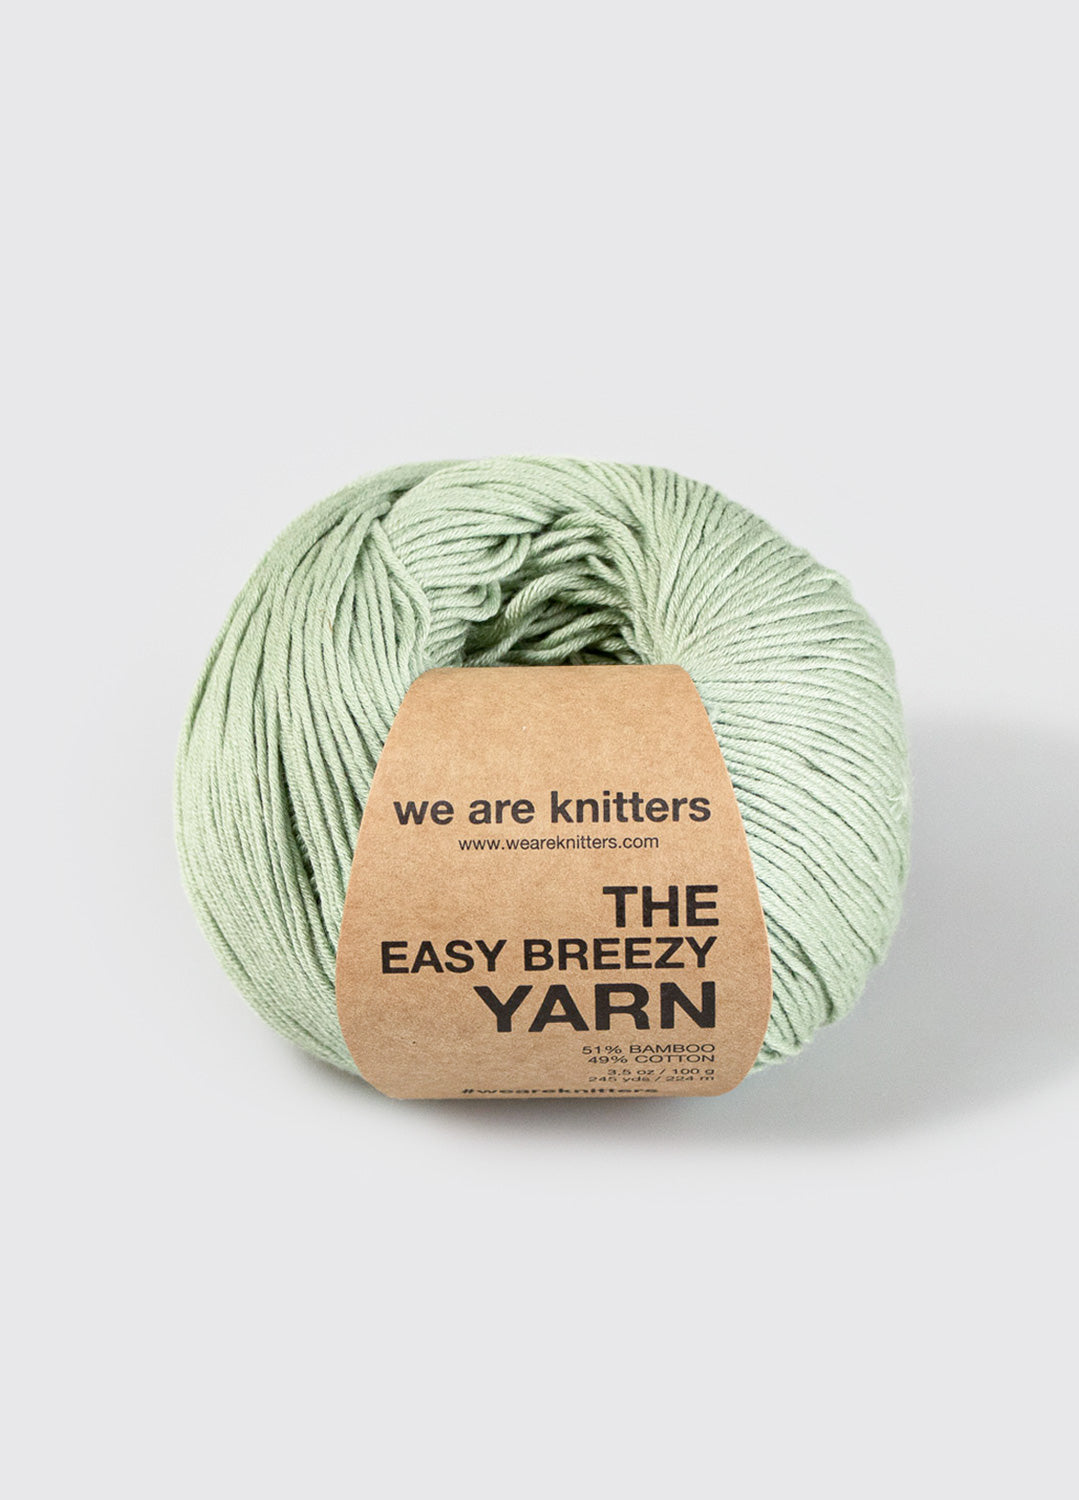 Easy Breezy Yarn Sage Green